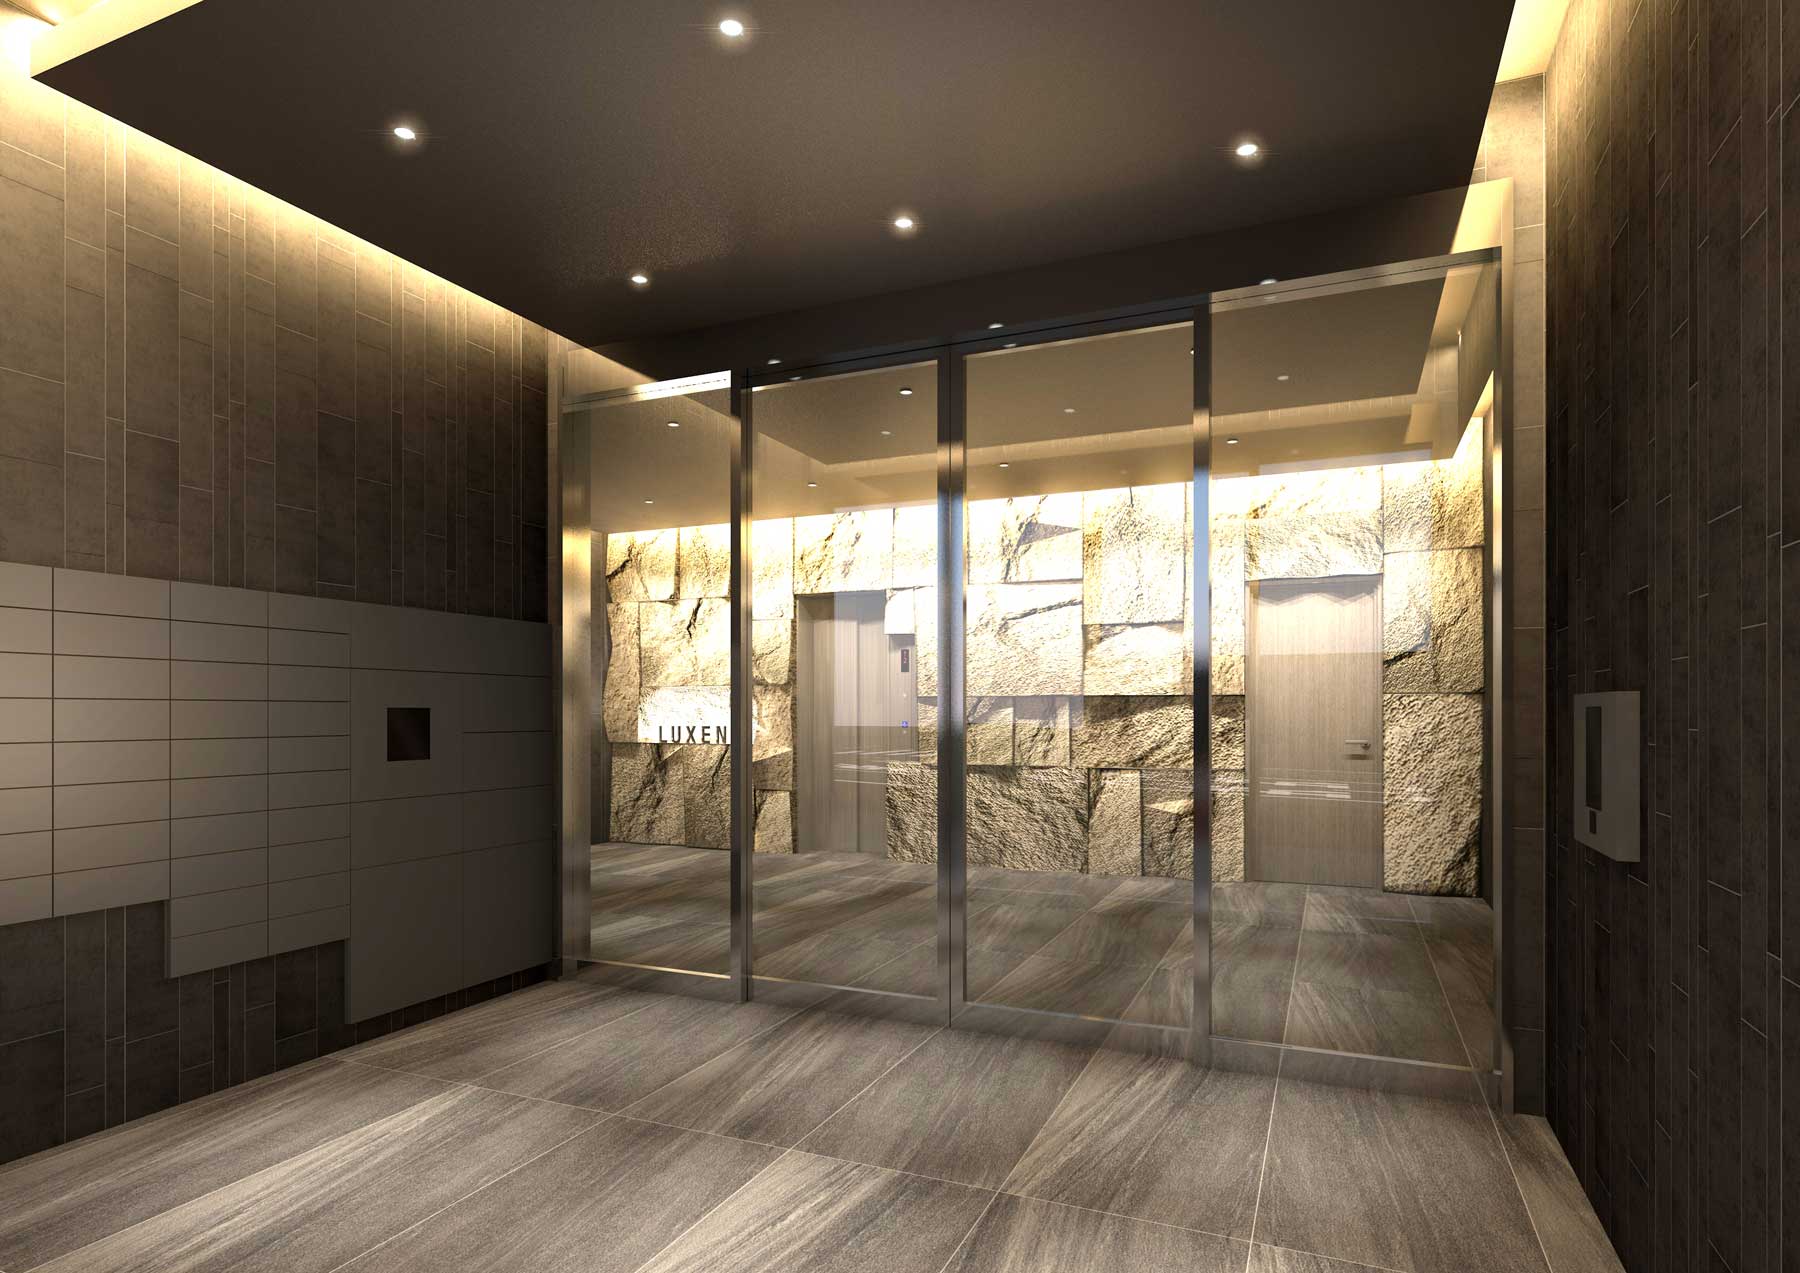 センチュリオンホテル・クラシック奈良2017年8月グランドオープン悠々とした万葉からの時間をデザイン。蘇った奈良駅前オフィスビルフルリノベーション。